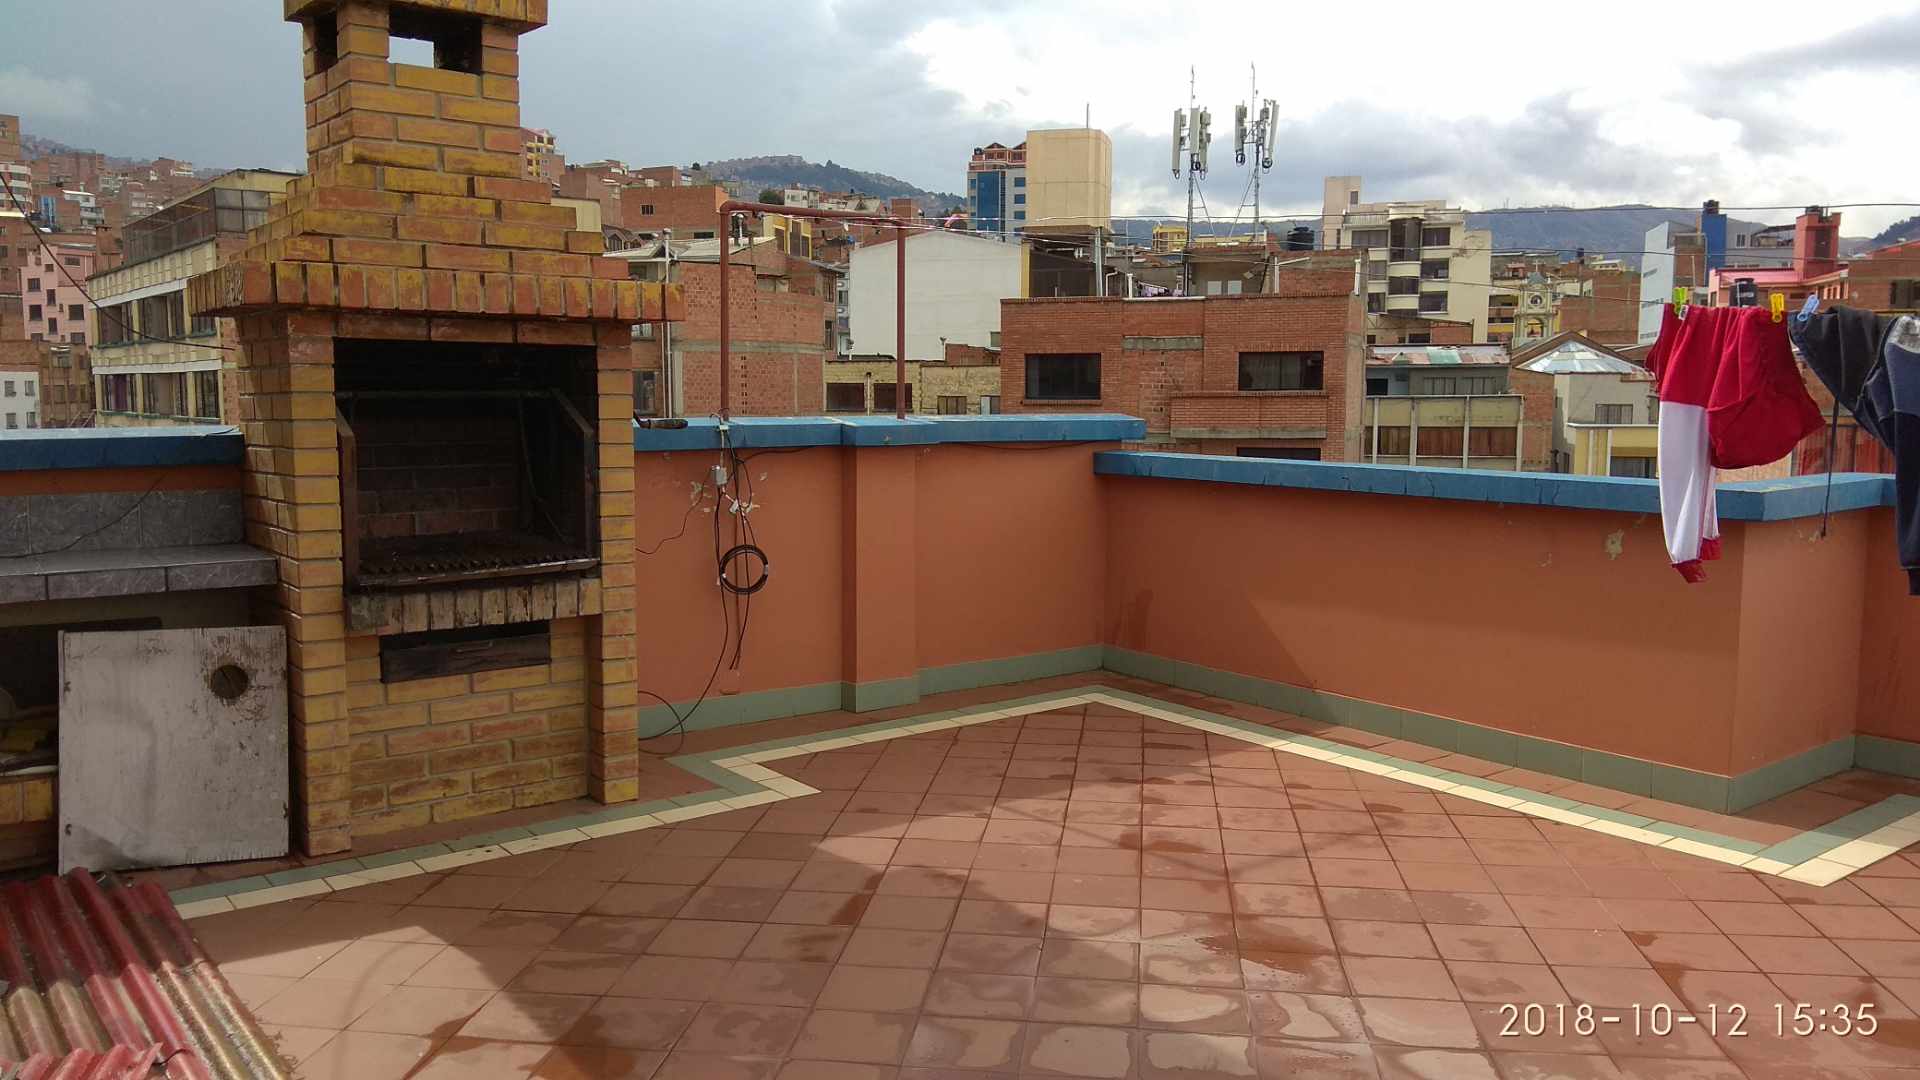 Departamento en San Pedro en La Paz 2 dormitorios 1 baños  Foto 3